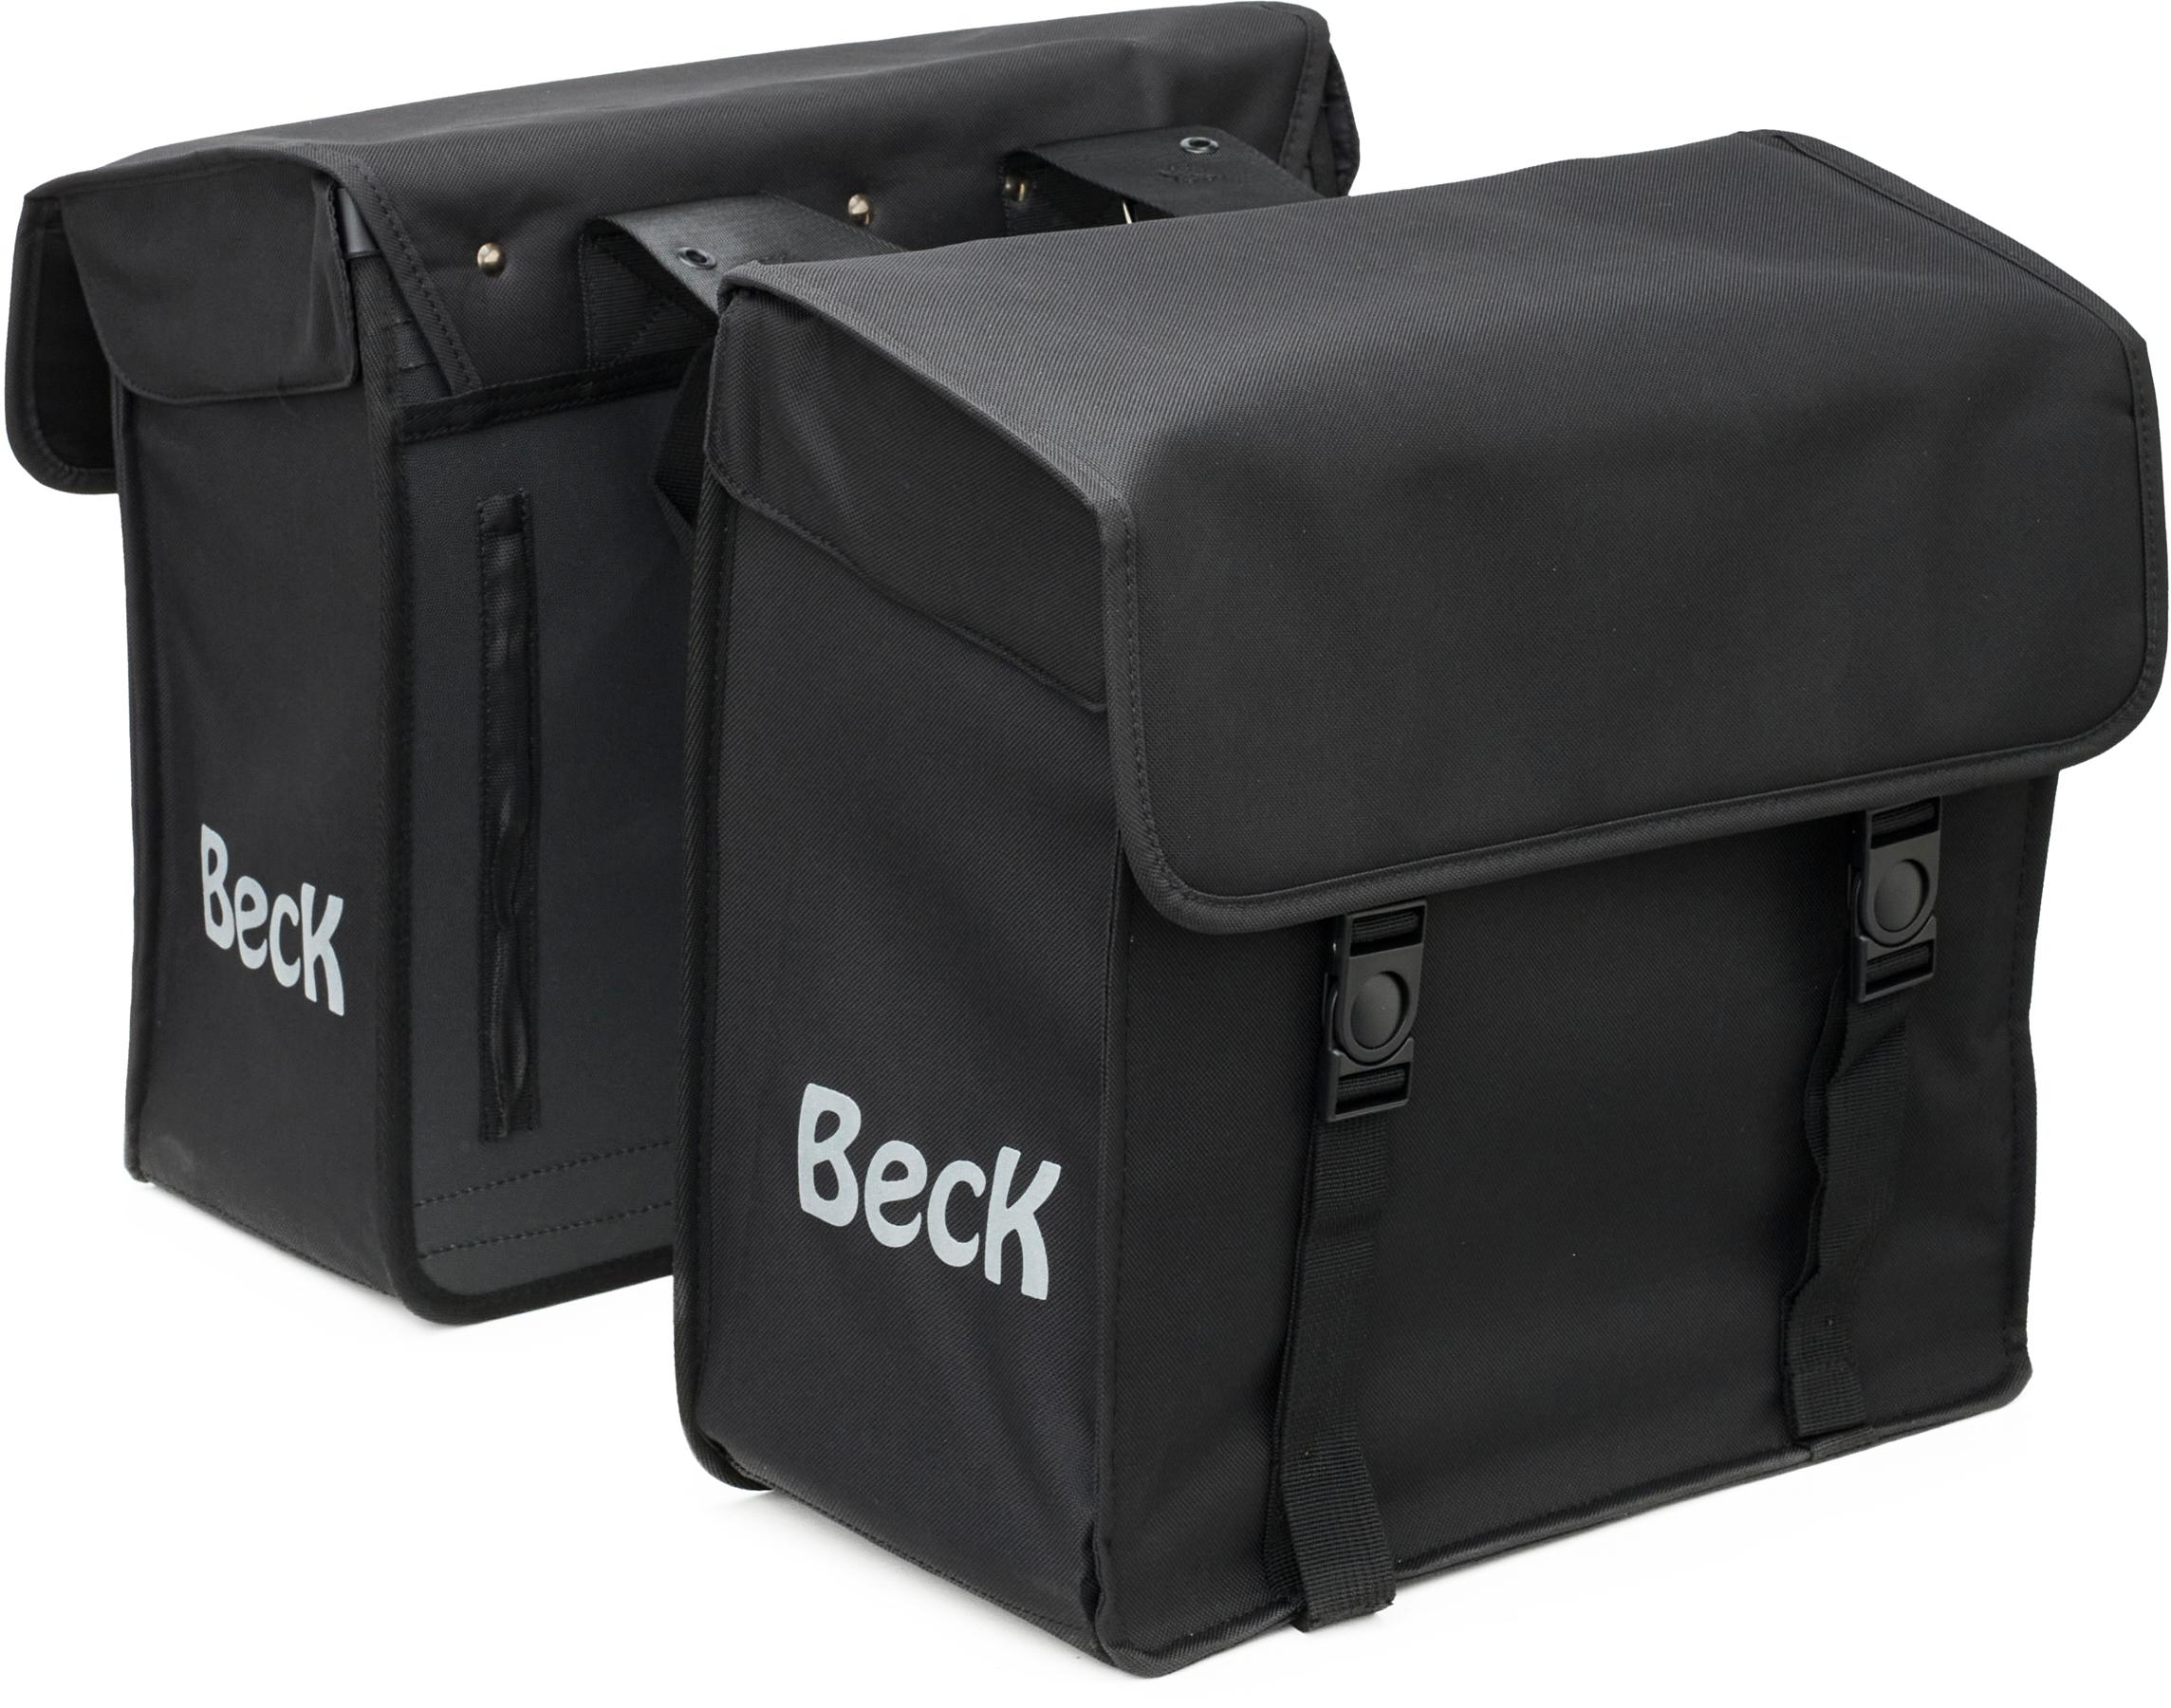 Beck Canvas Double Pannier Bag Black